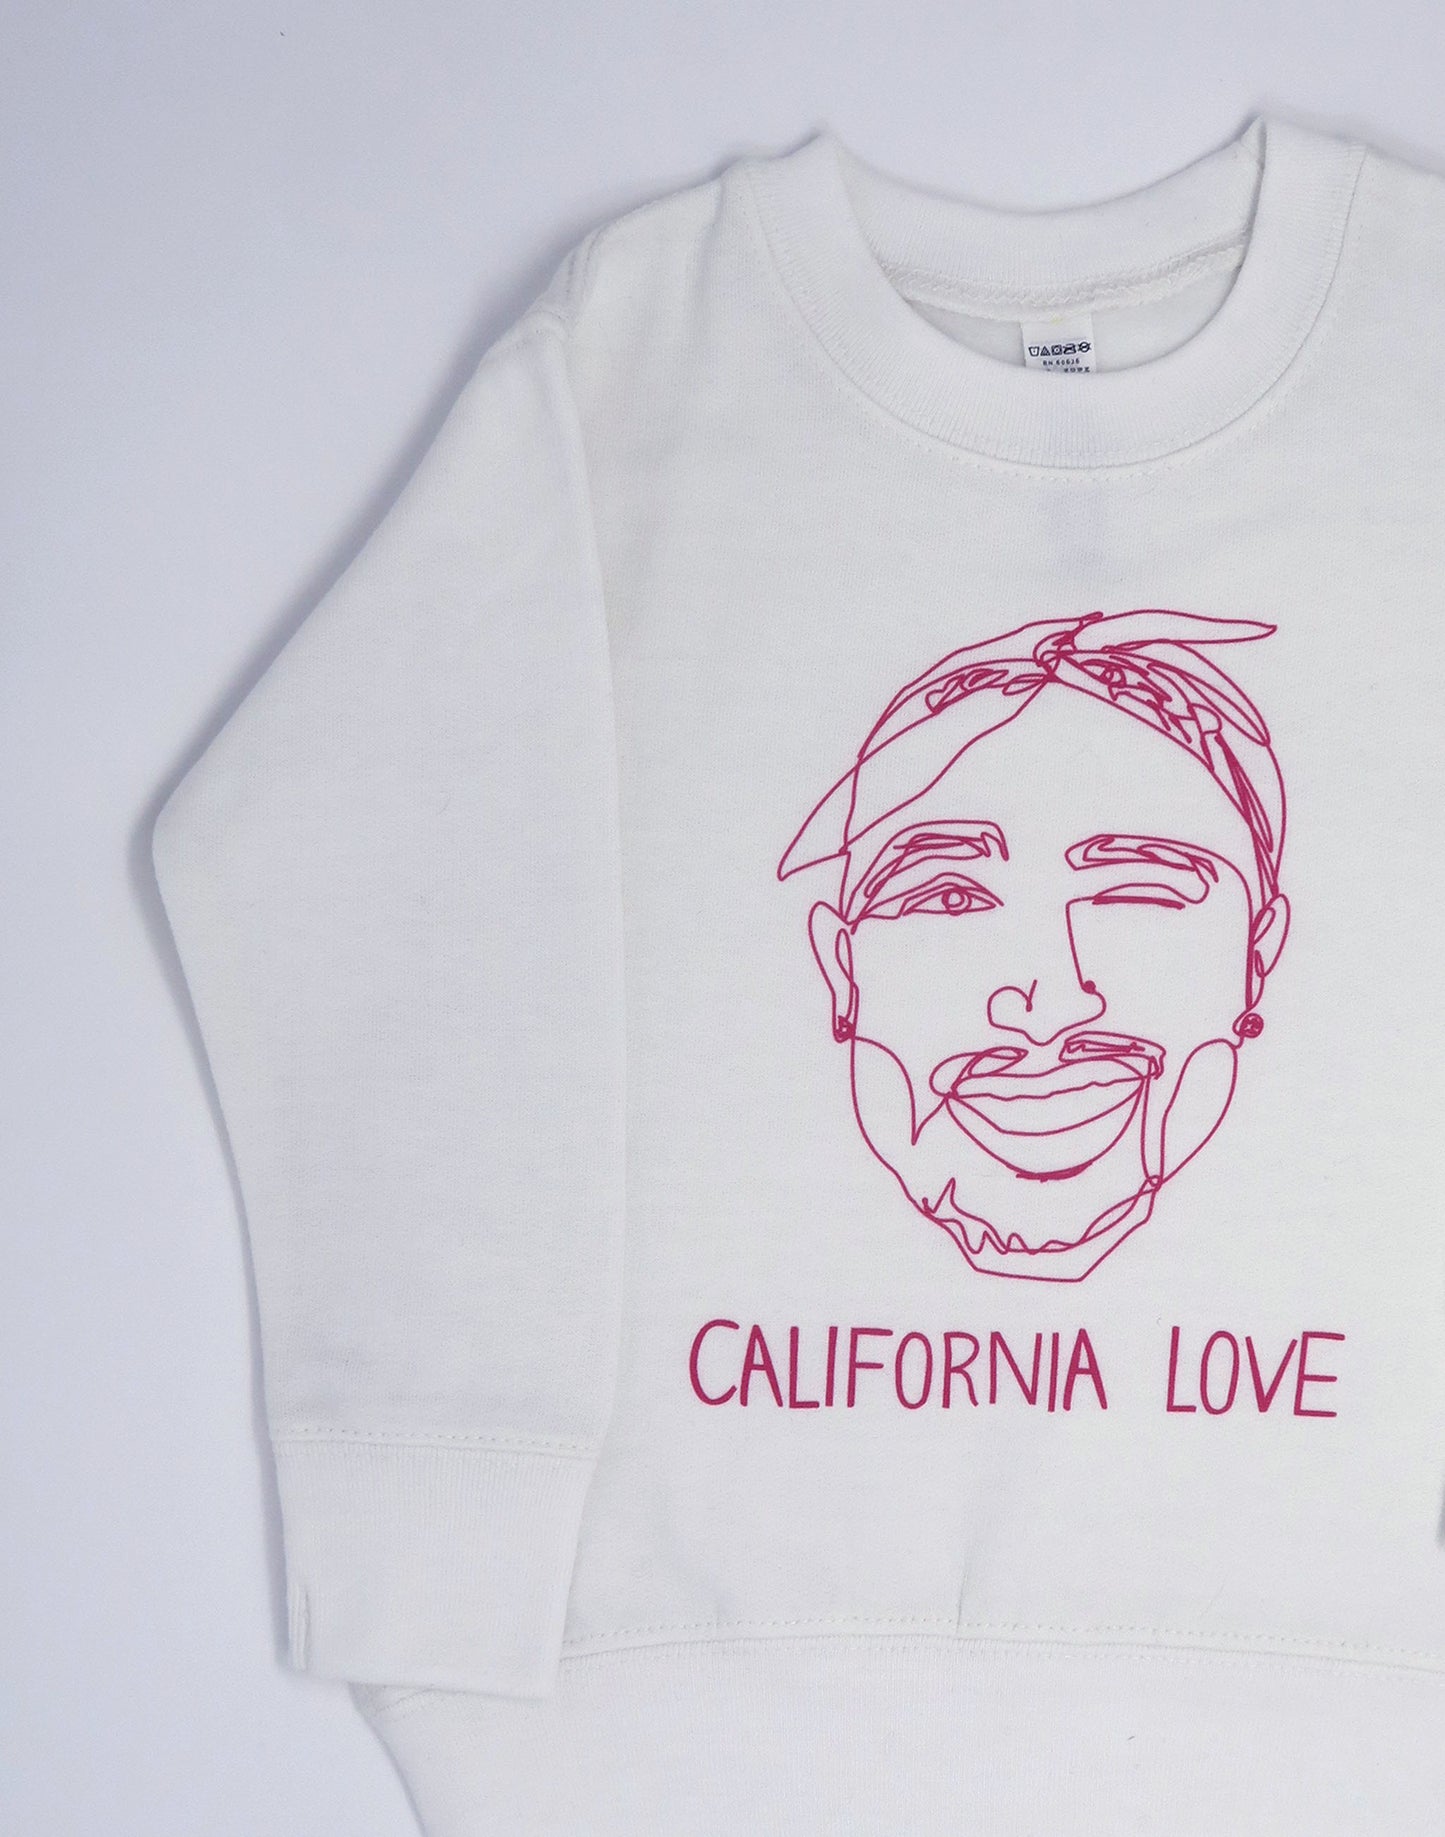 California Love Tupac Kids Sweatshirt